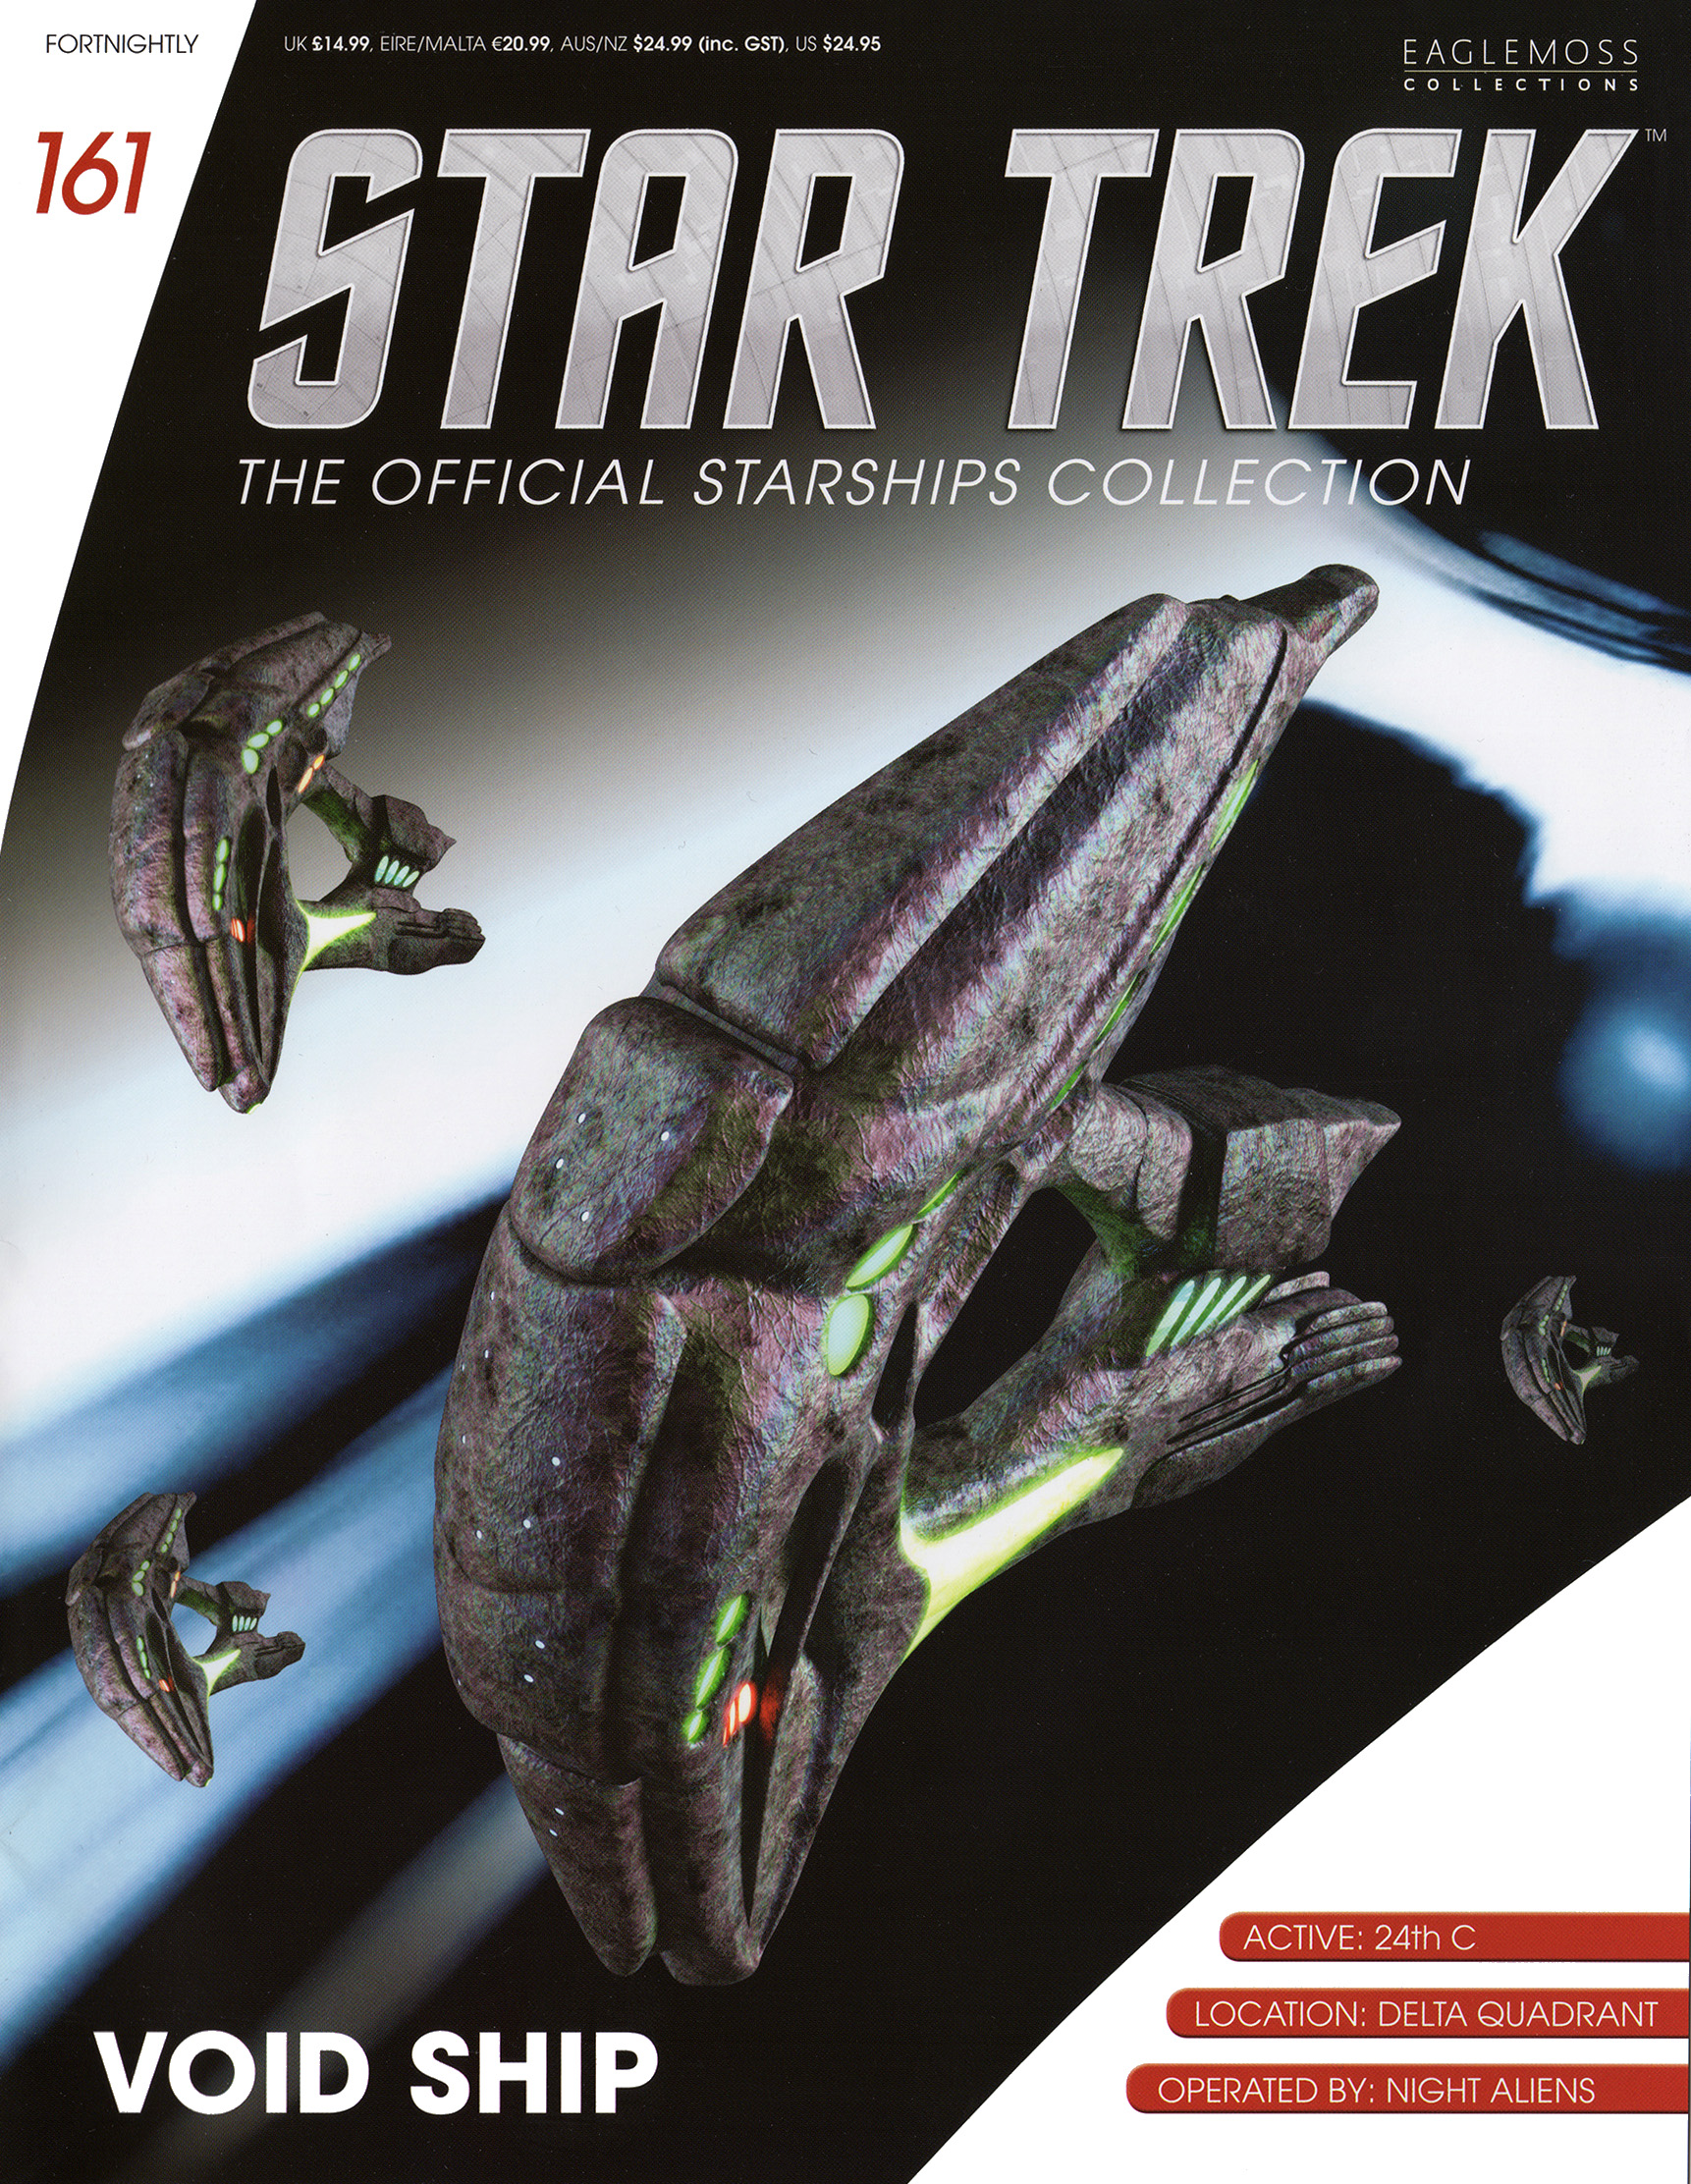 Eaglemoss Star Trek Starships Issue 161